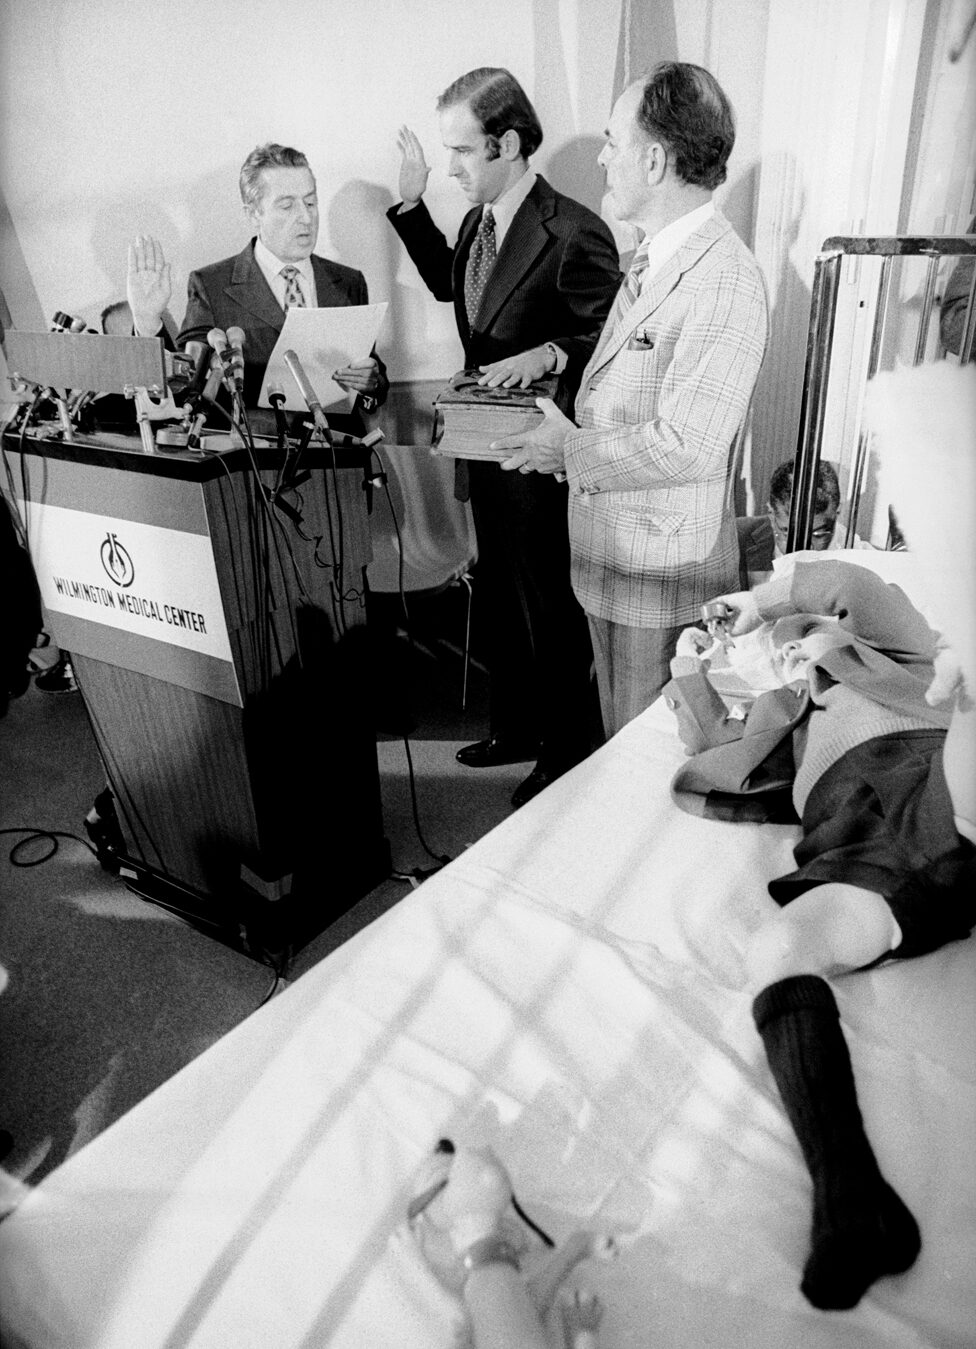 Senator Joseph Biden takes the oath of office in a hospital room